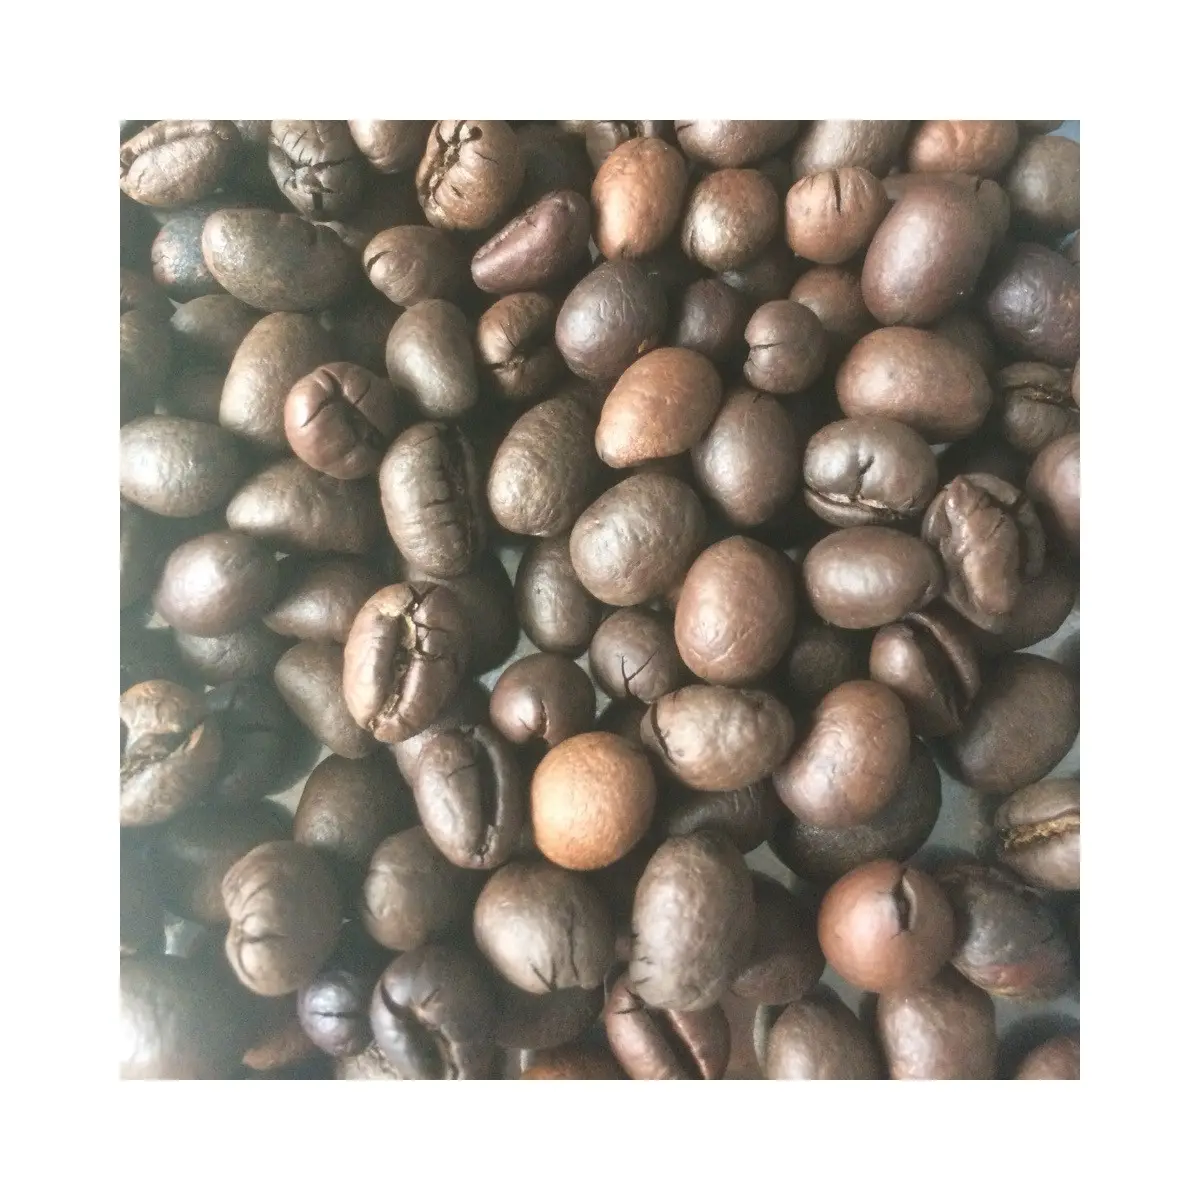 حبوب قهوة عربية روبوستا محمصة بسعر معقول طازجة عضوية ذات نكهة نقية داكنة عالية الجودة